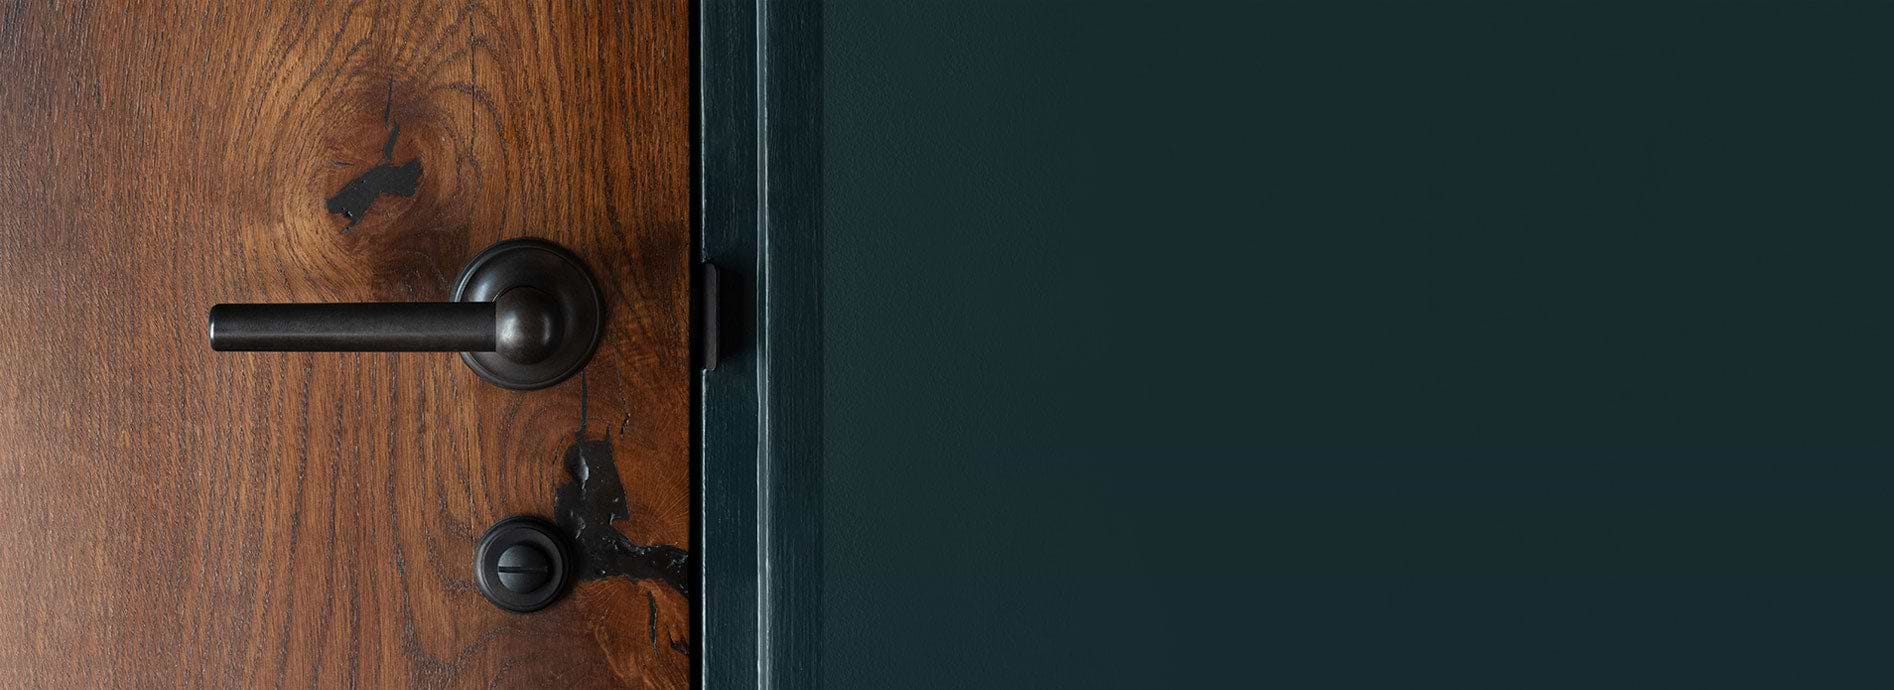 Bronze door handle by Corston on wooden door